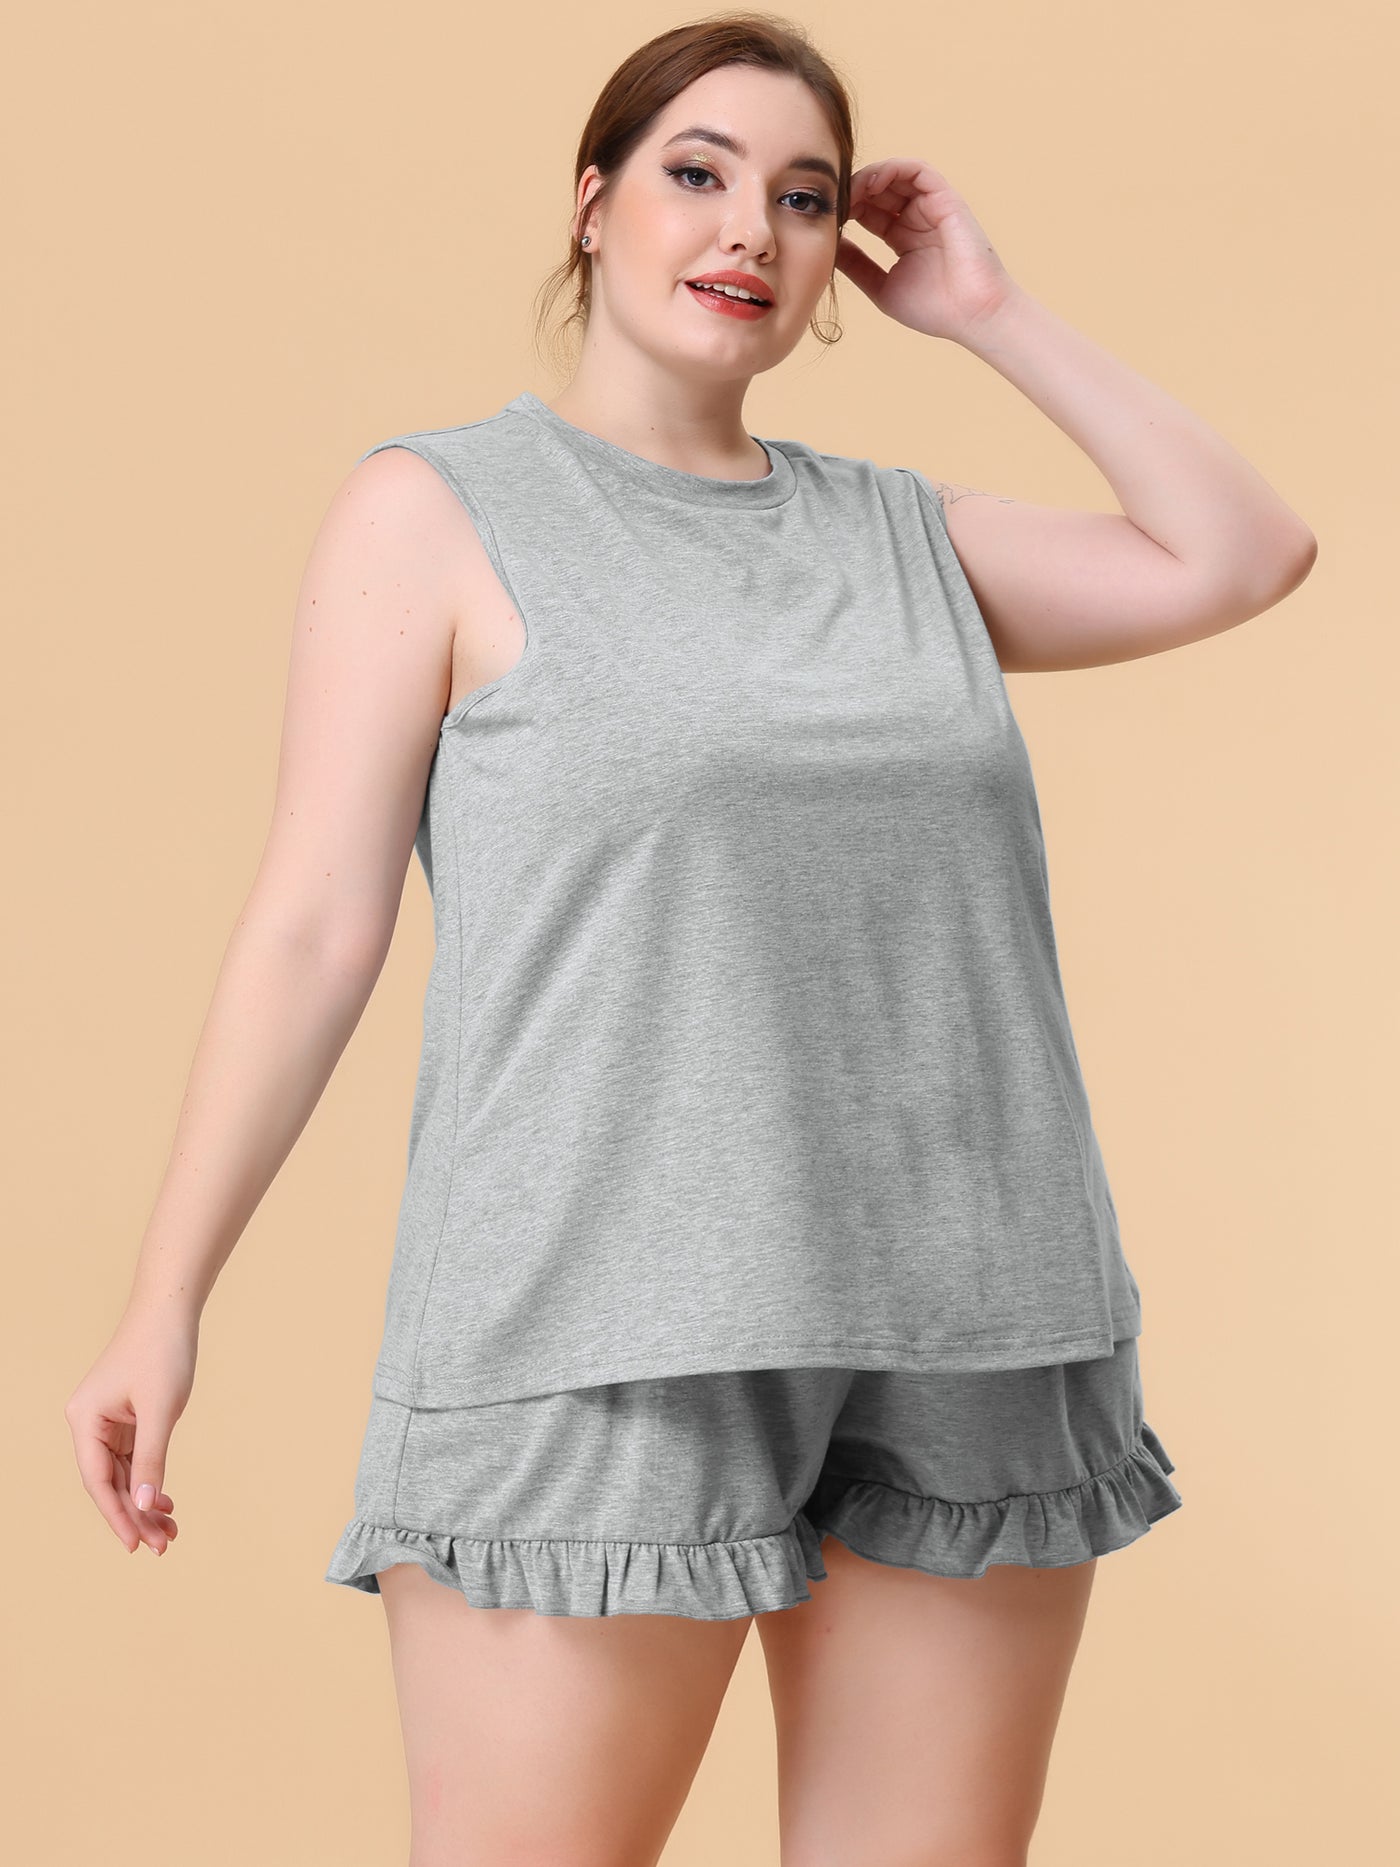 Bublédon Women's Plus Size Pajamas Set Knit Tank Top Sleepwear